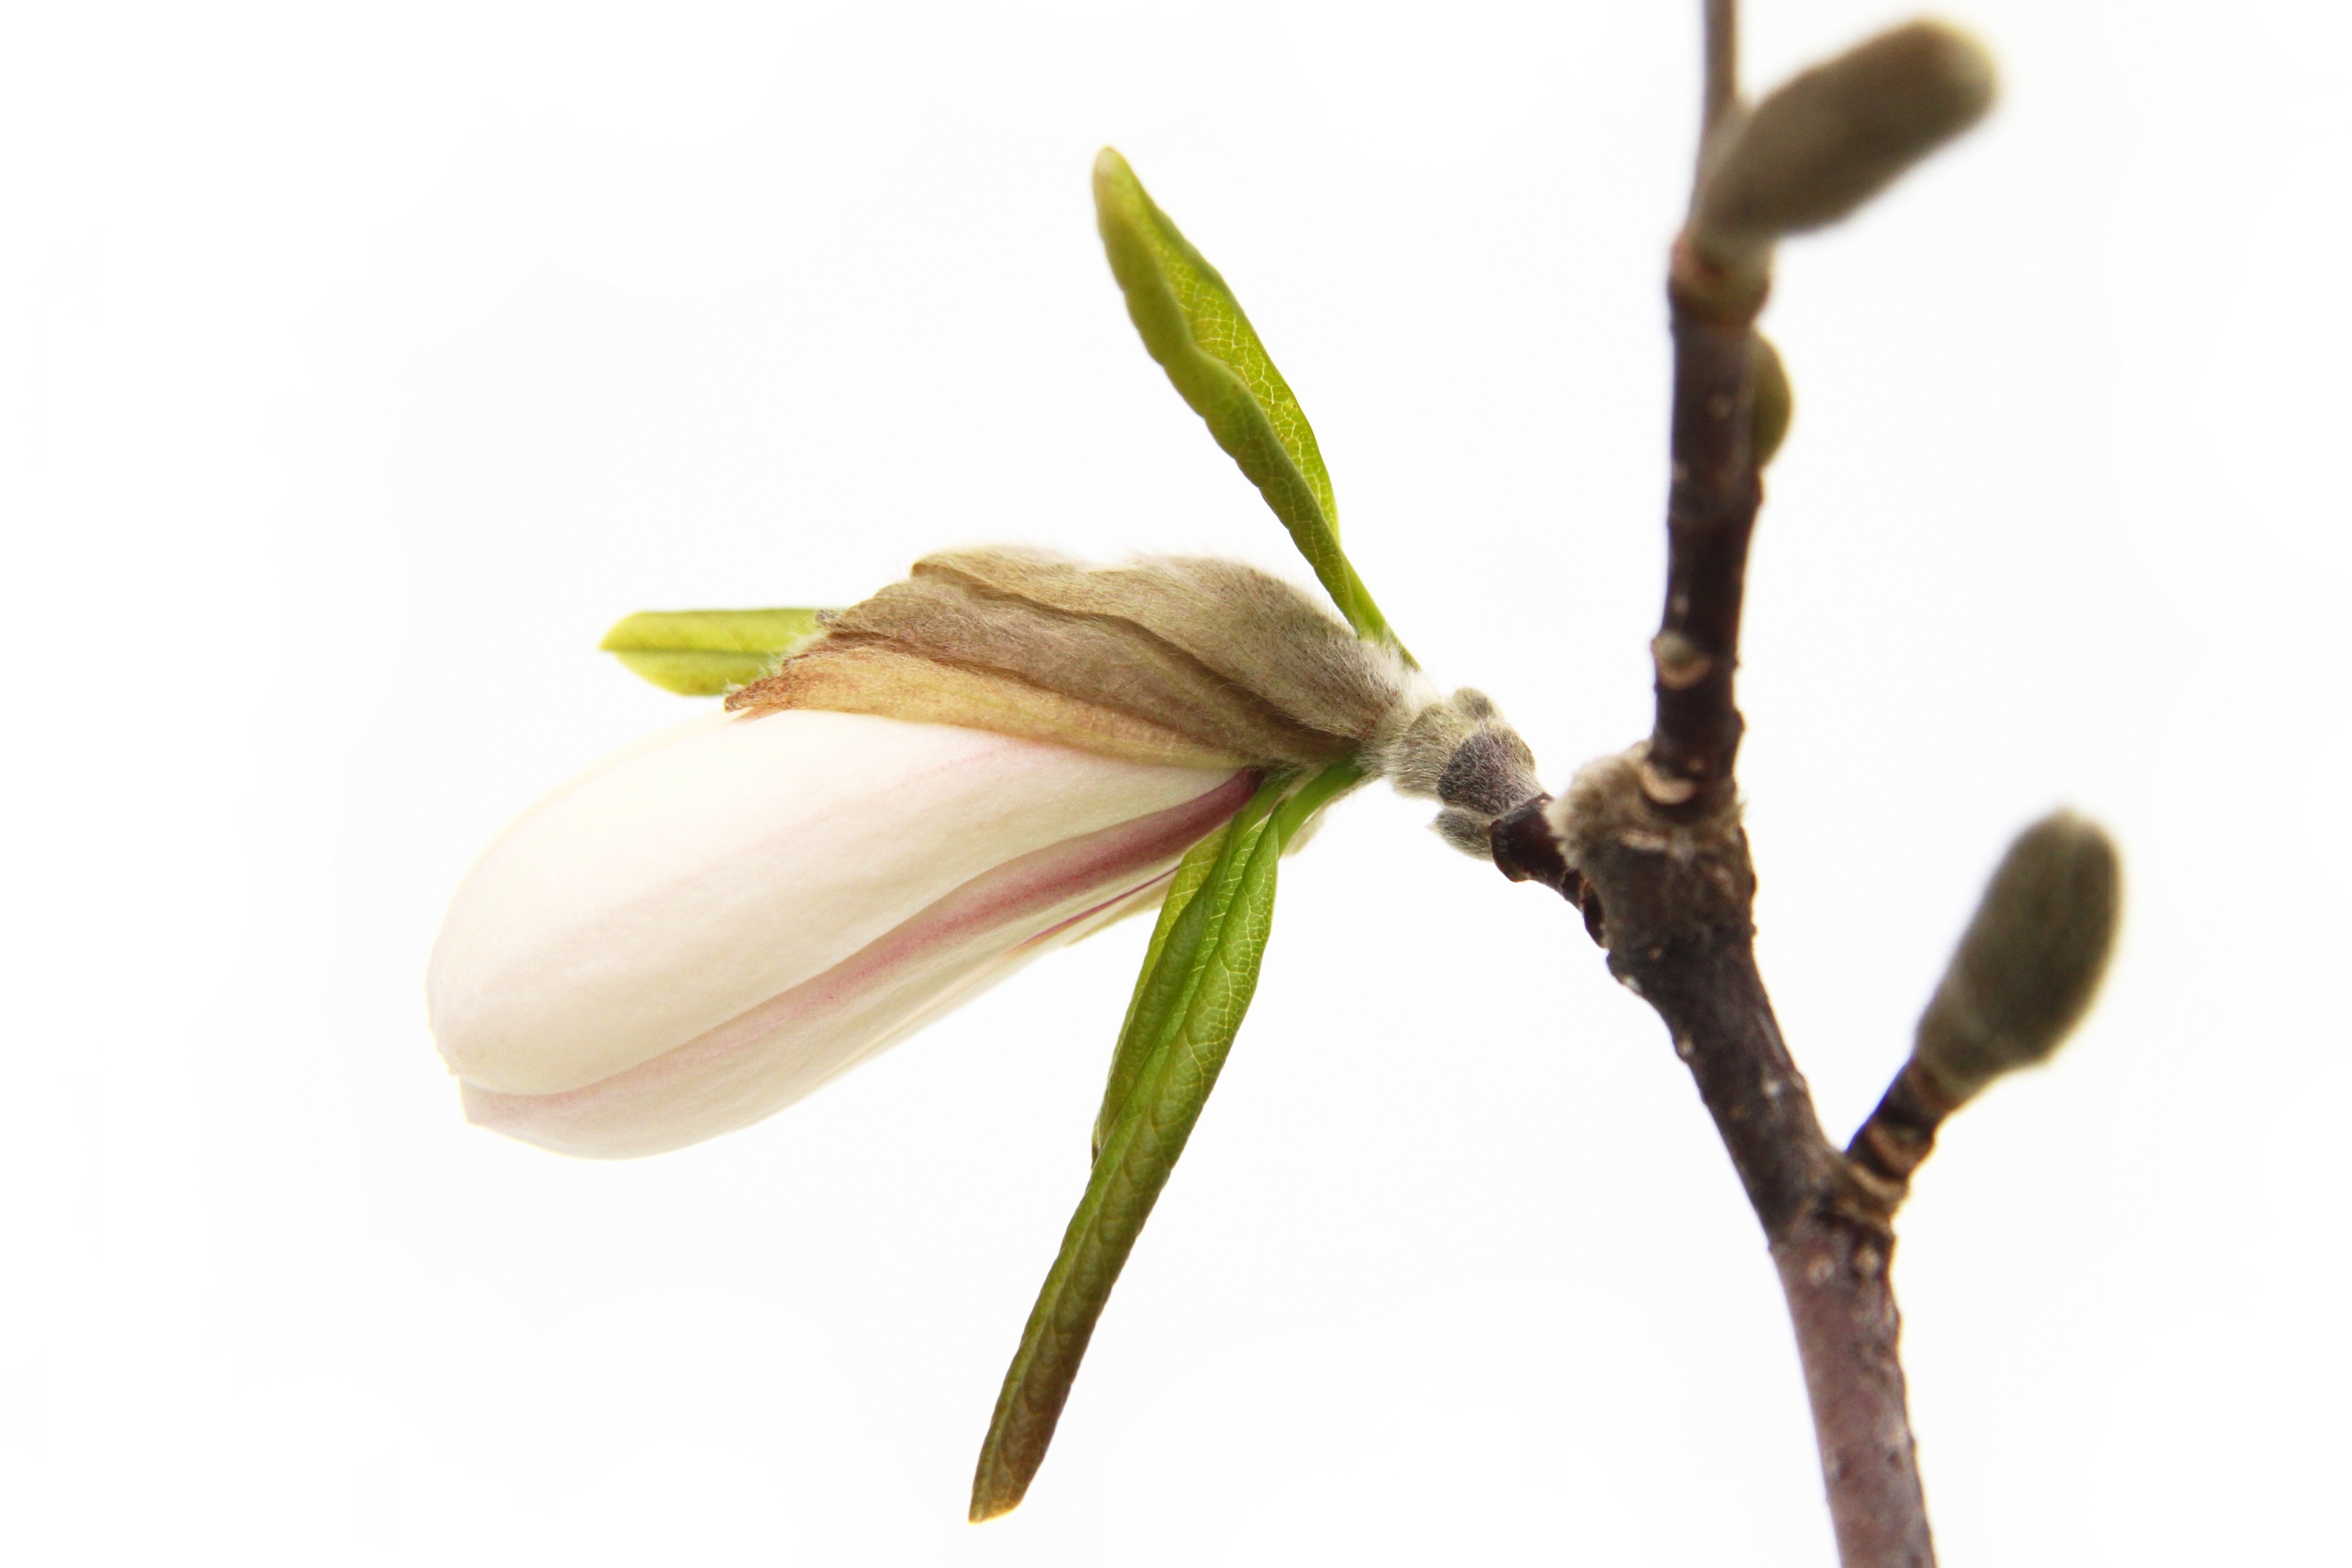 magnolia bud